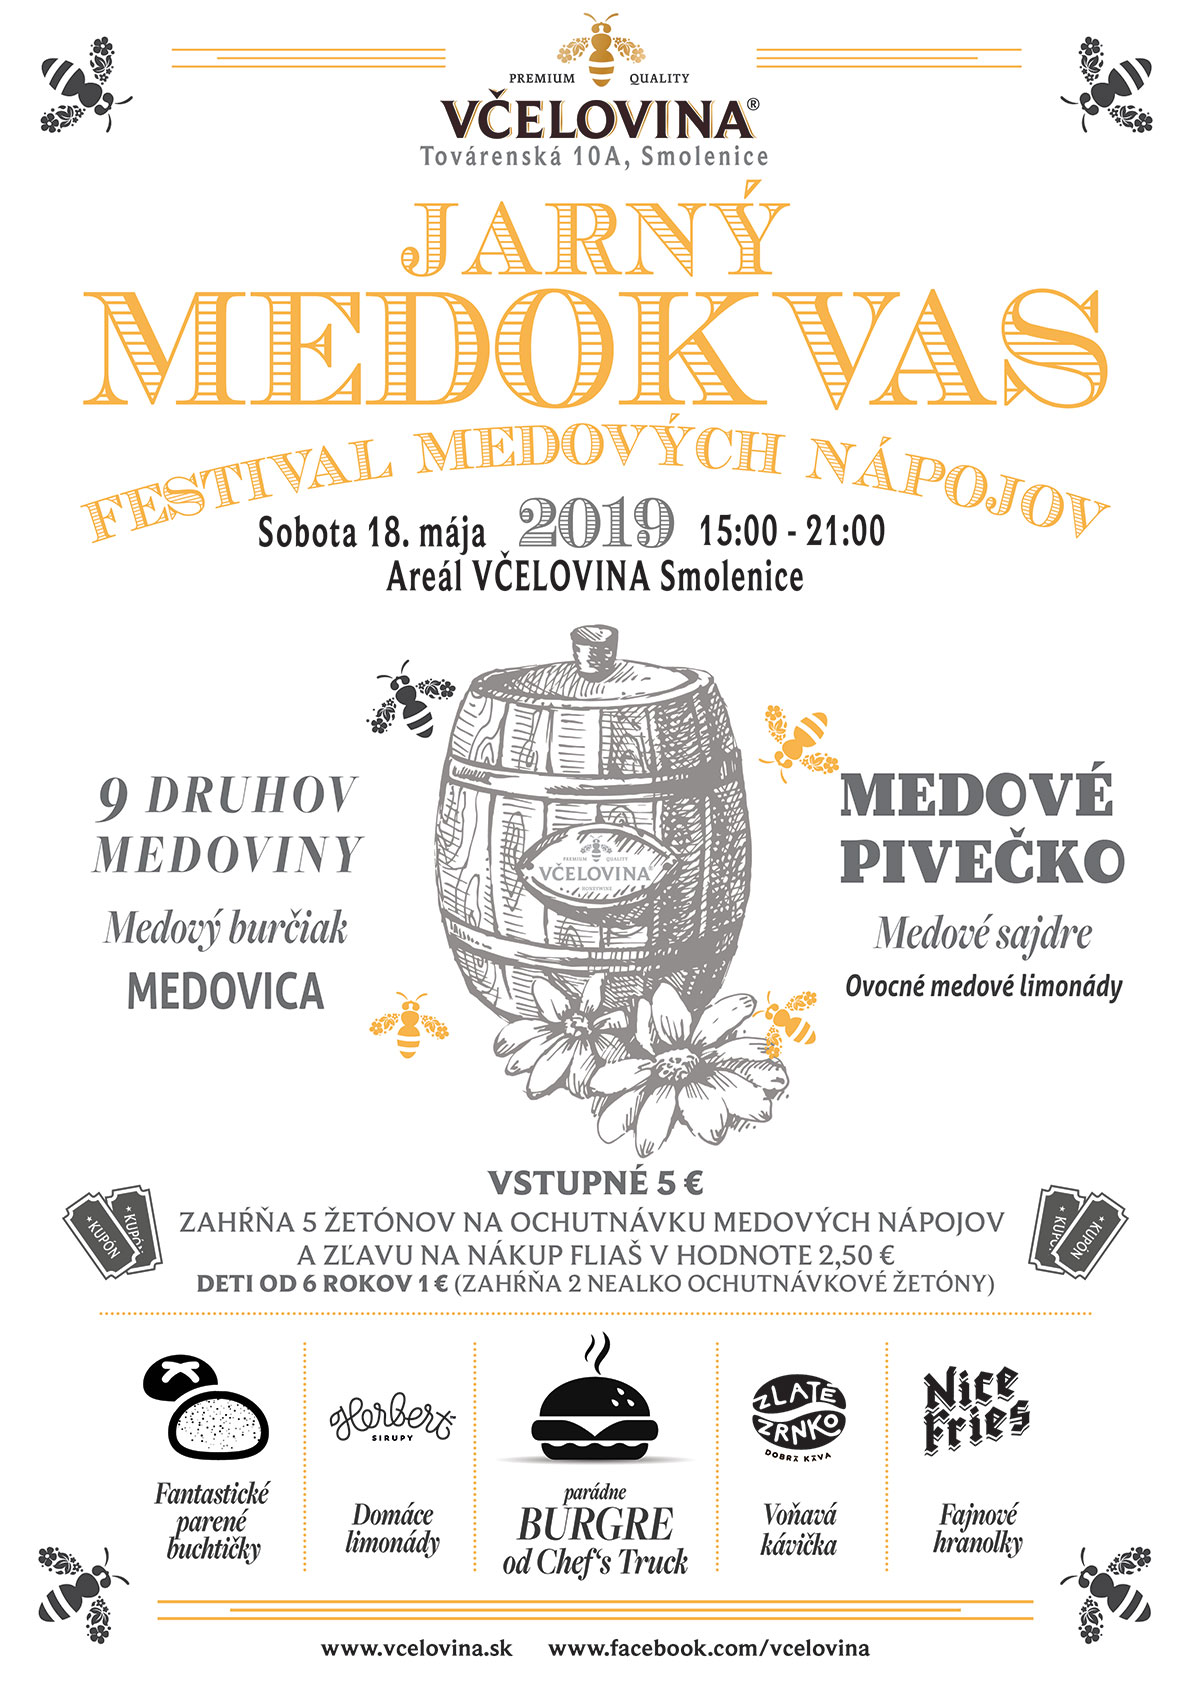 Jarn Medokvas 2019 Smolenice - festival medovch npojov